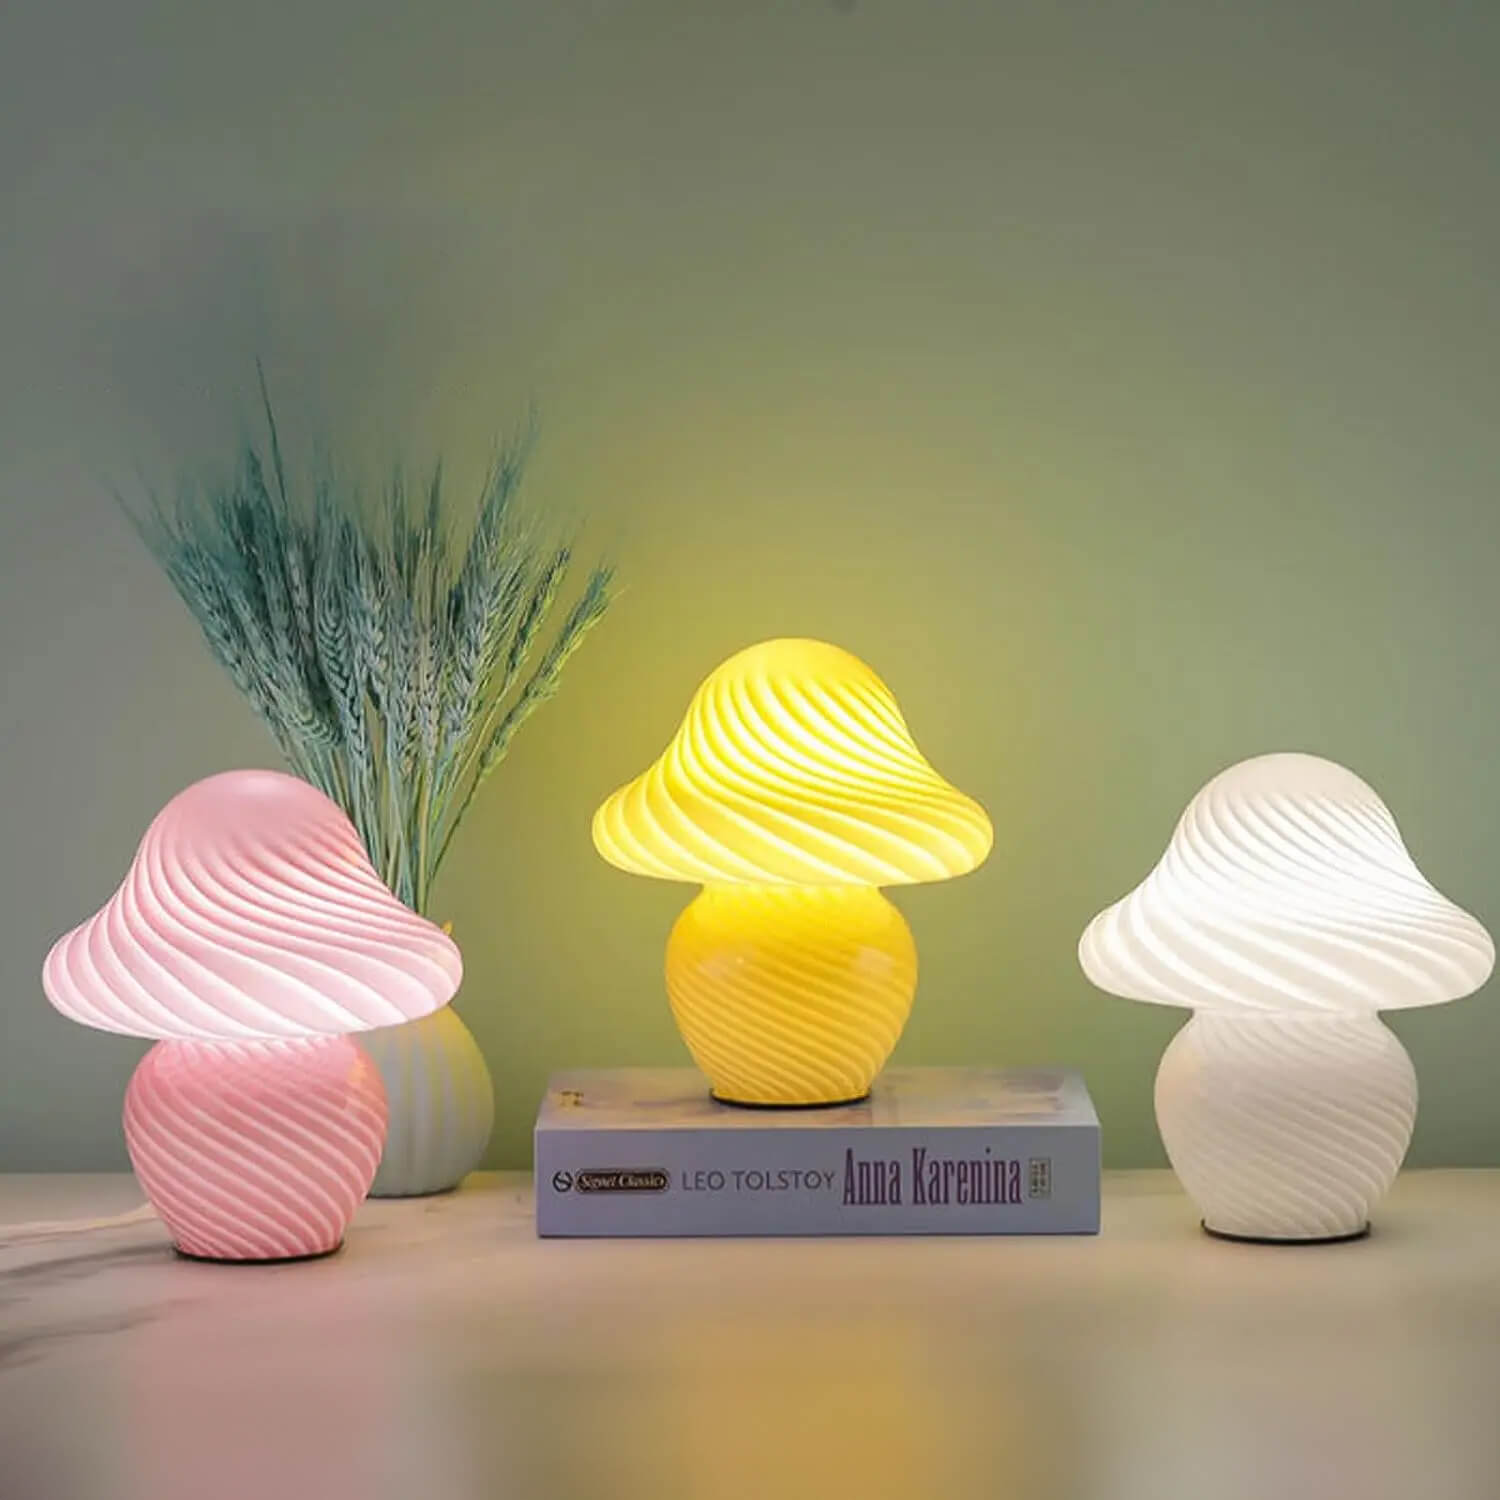 Stellar-Skeleton-Striped-Glass-Mushroom-Lamp-Glass-Table-Lamp-Dimmable-LED-Light-1